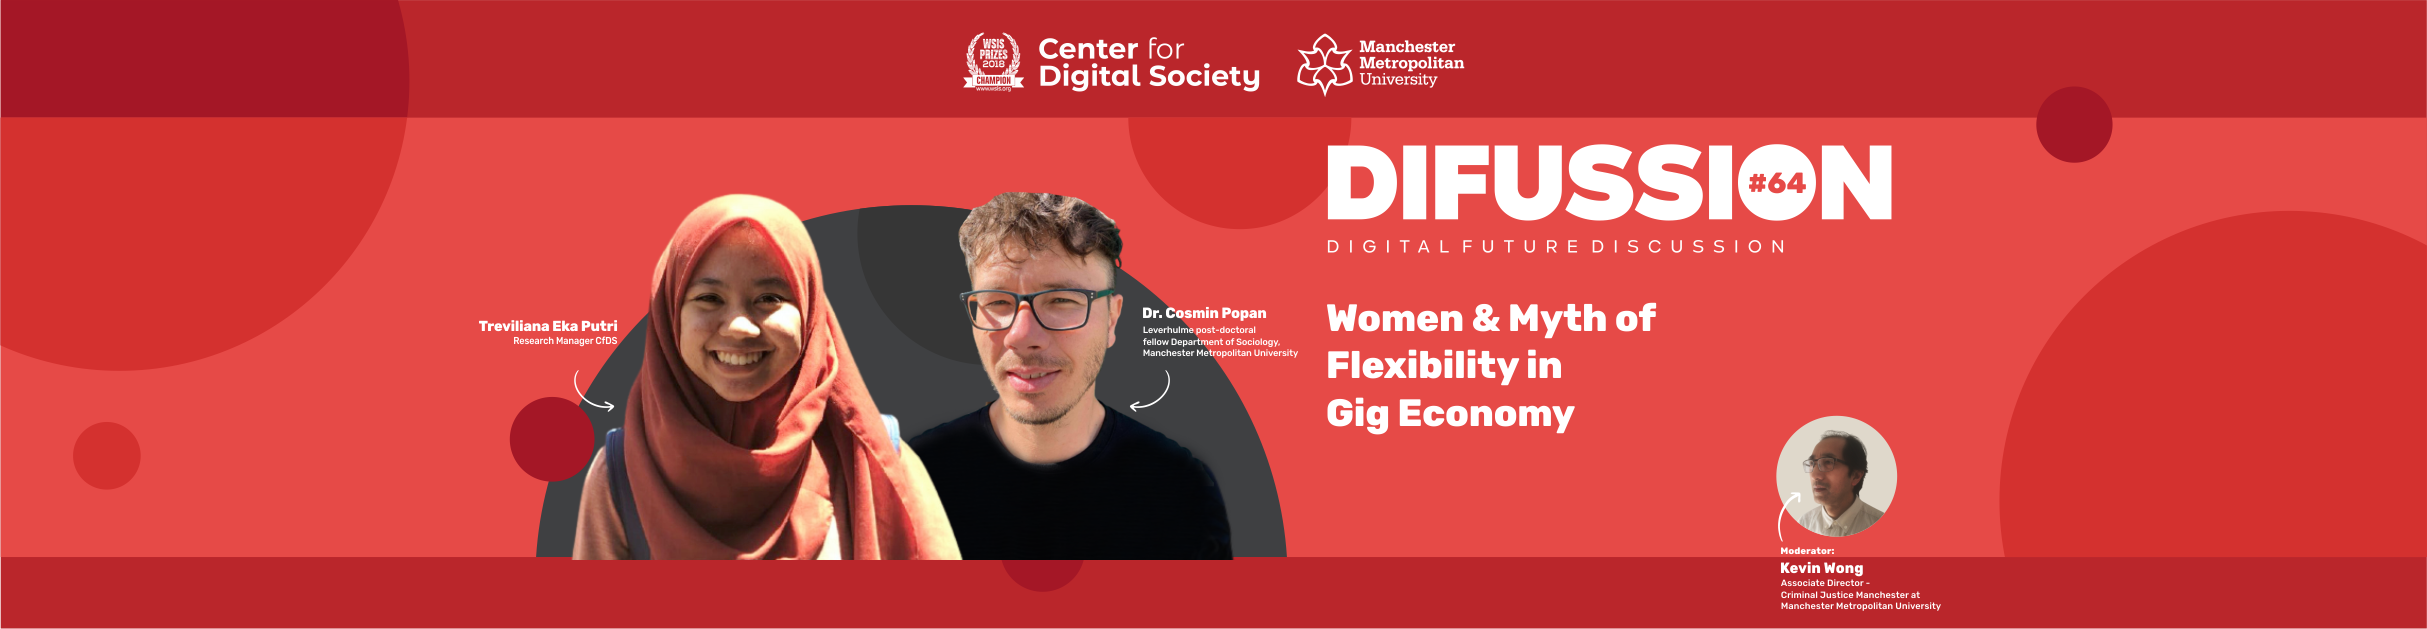 [SIARAN PERS] Perempuan dan Ilusi Fleksibilitas dalam Gig Economy | #DIFUSSION64